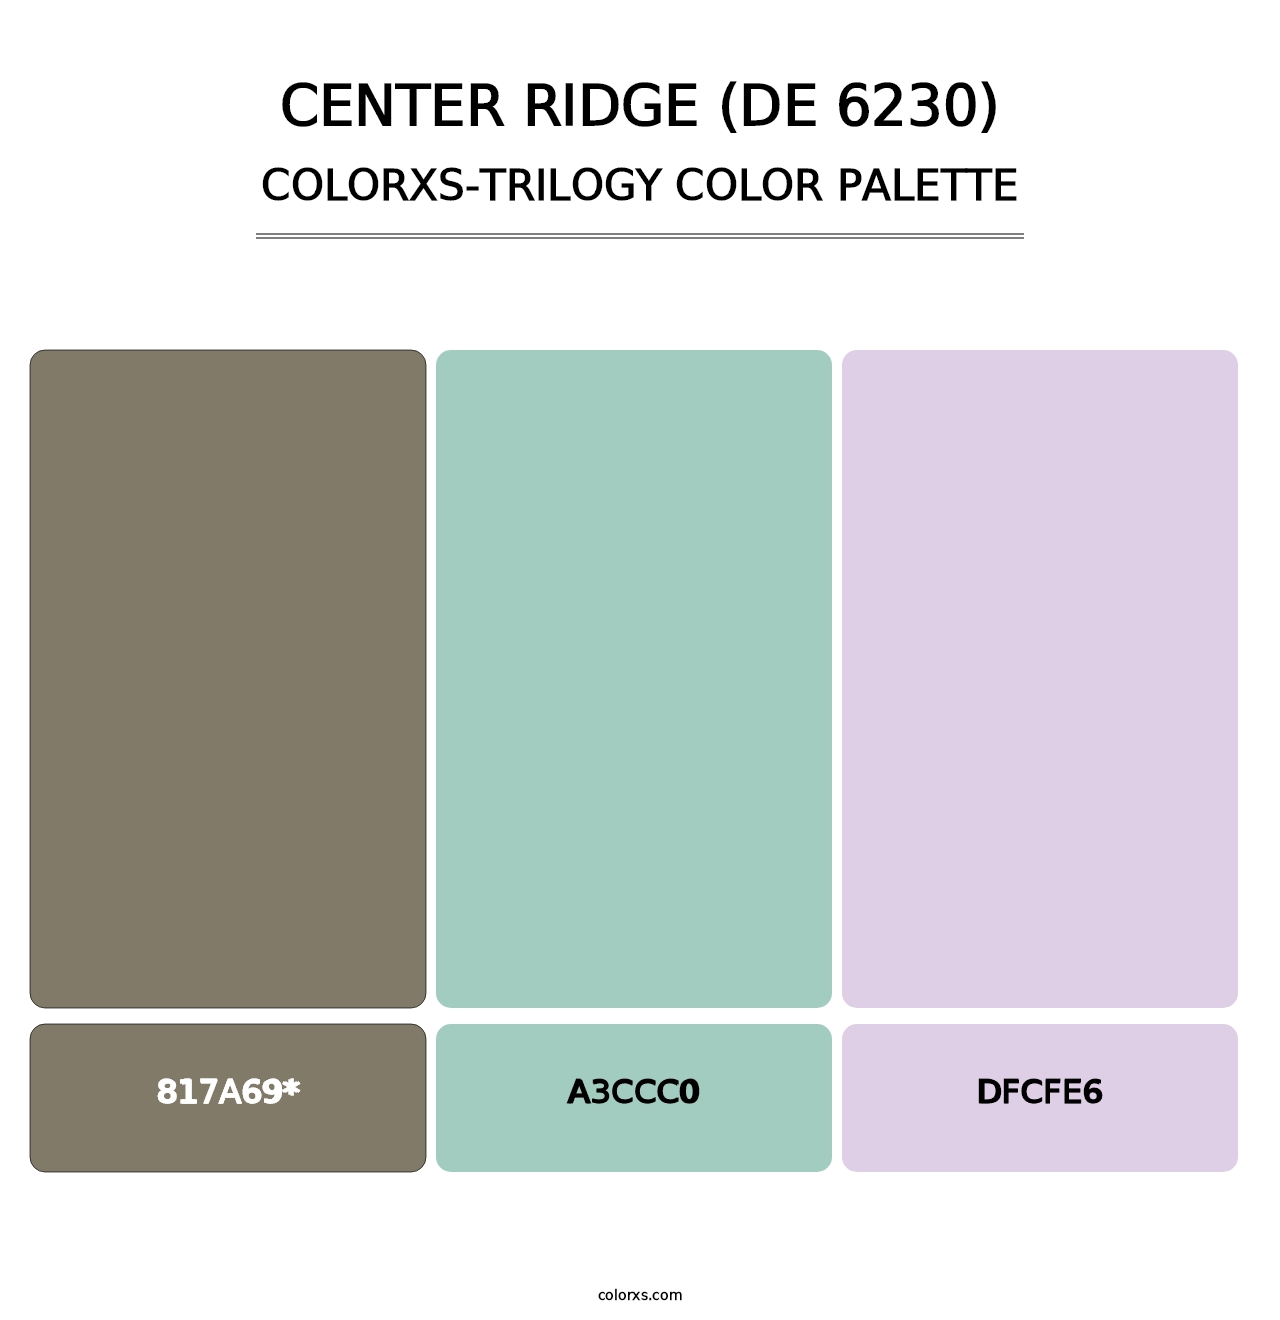 Center Ridge (DE 6230) - Colorxs Trilogy Palette